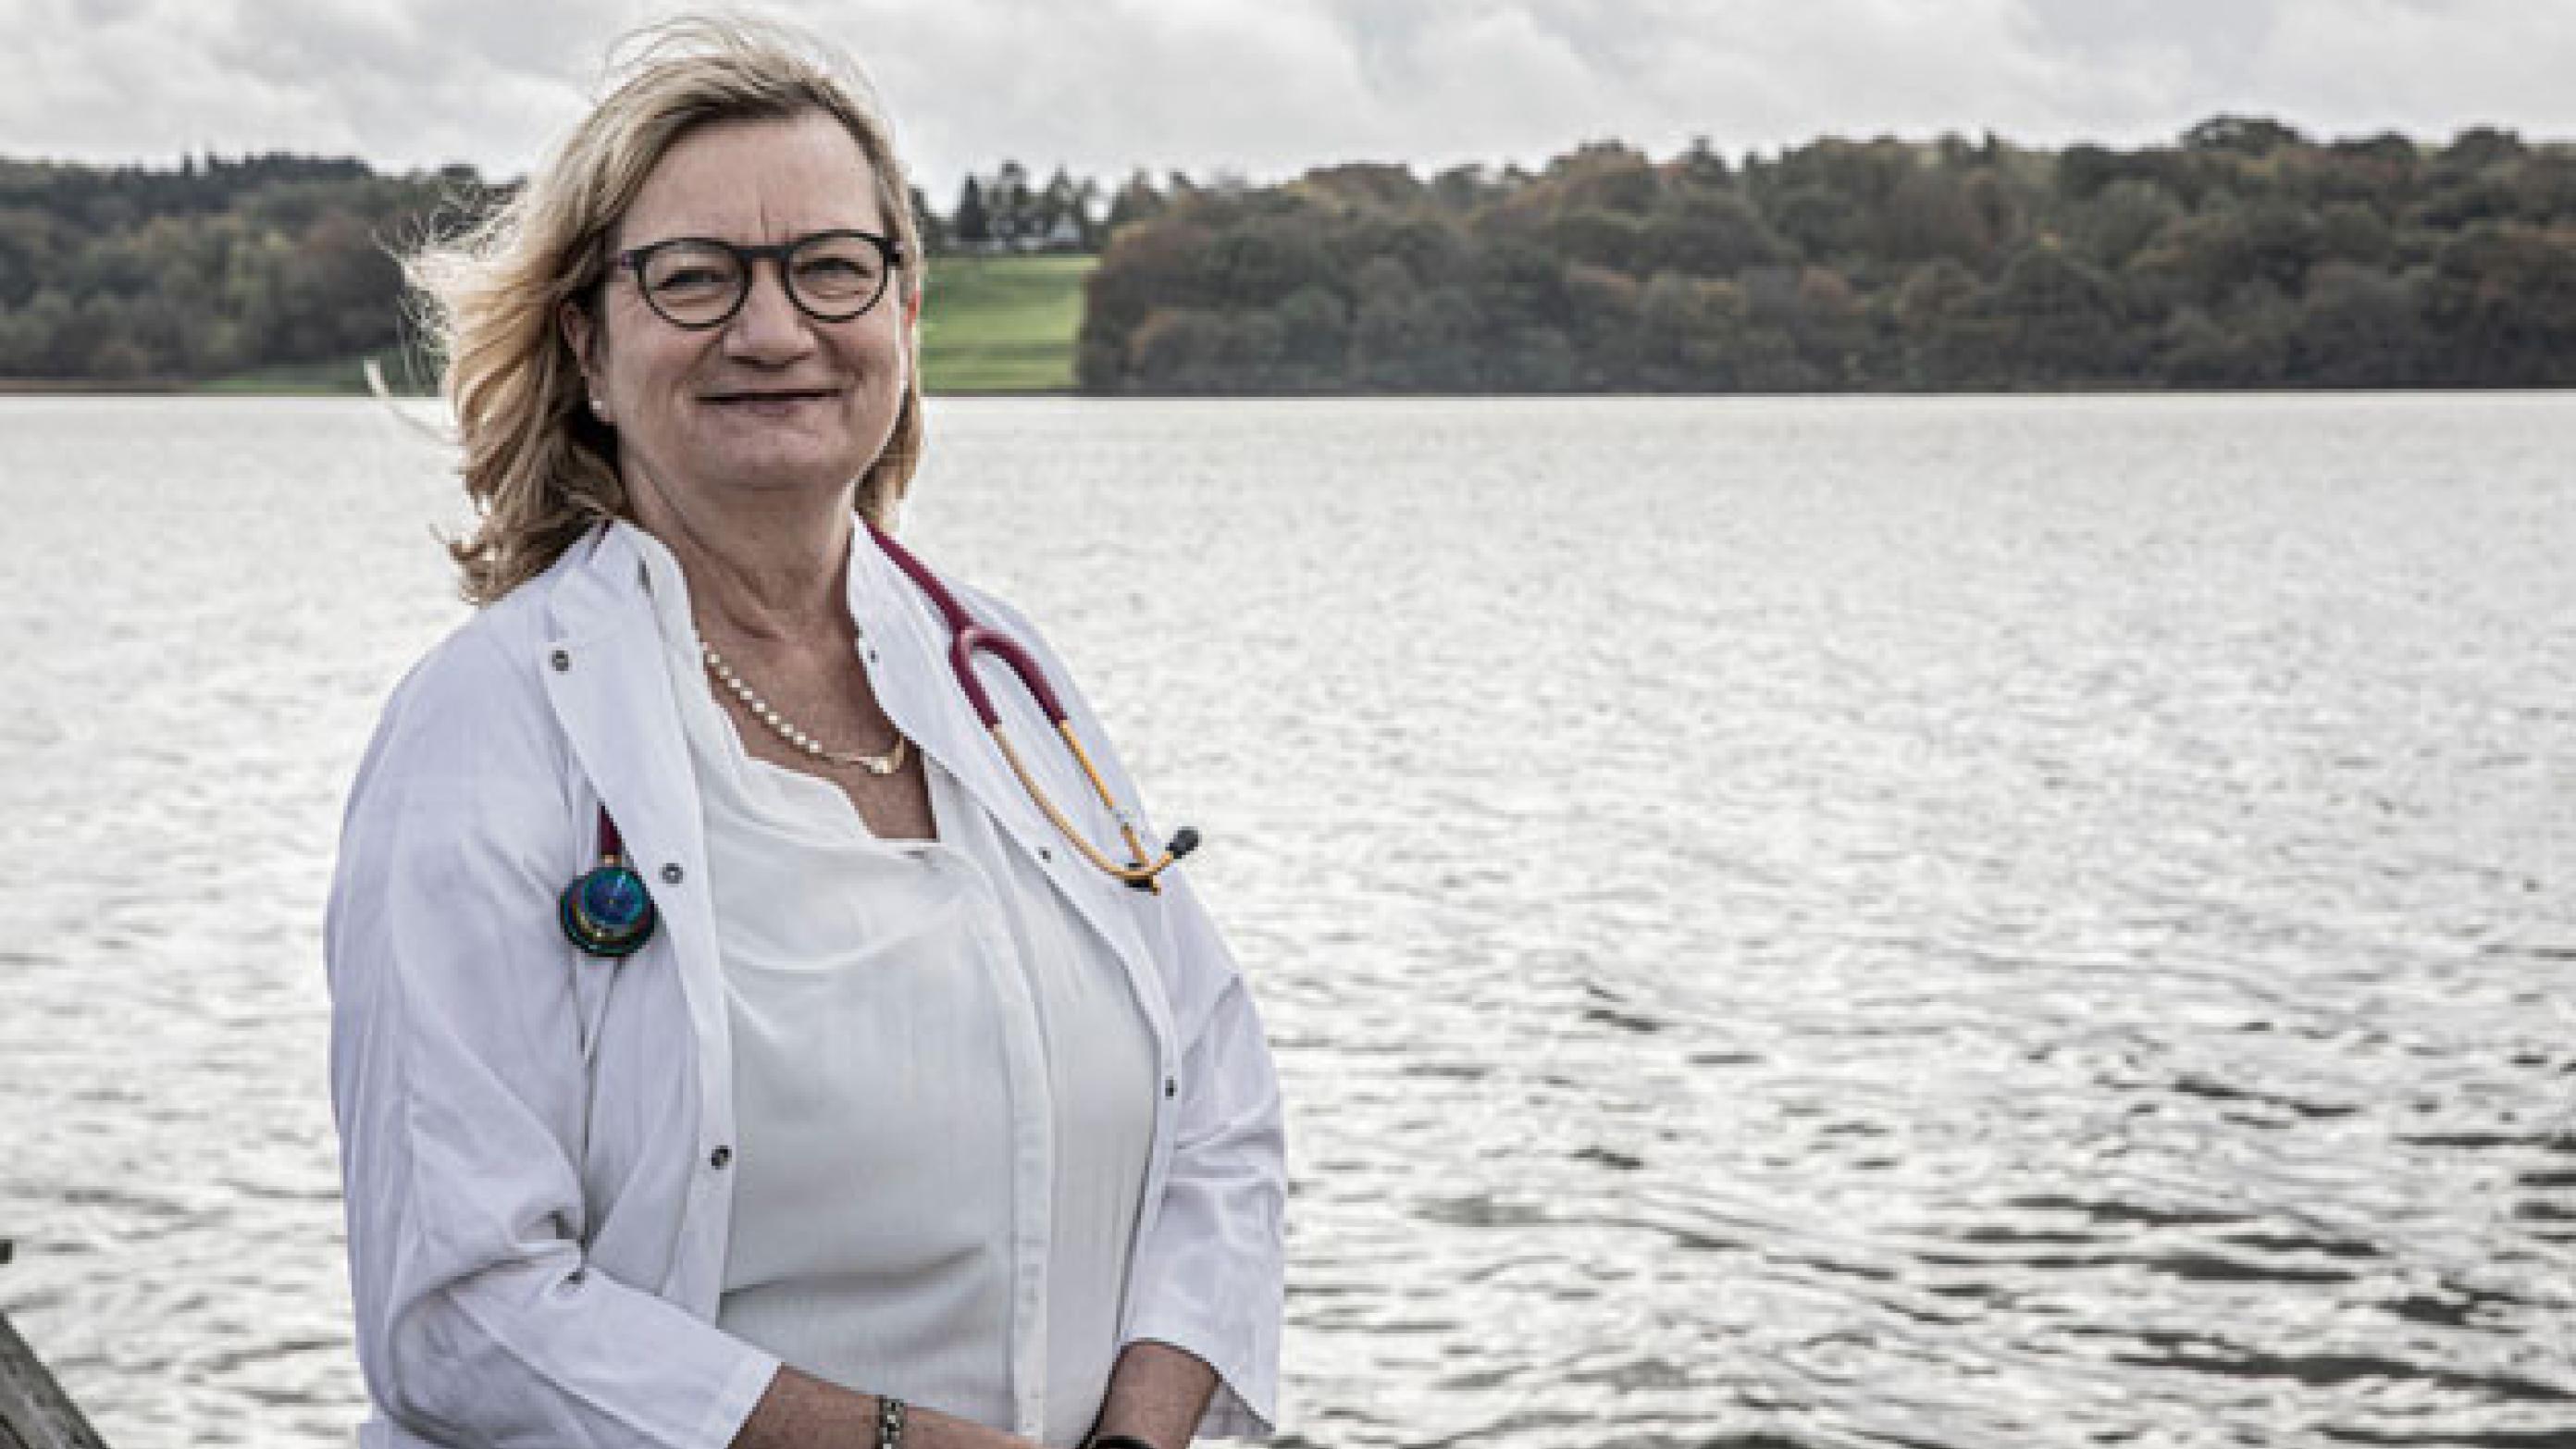 Praktiserende læge Inger Uldall Juhl er ved at etablere et lokalt netværk mellem praktiserende læger og præster i Kolding. Foto: Winblad Fotografi